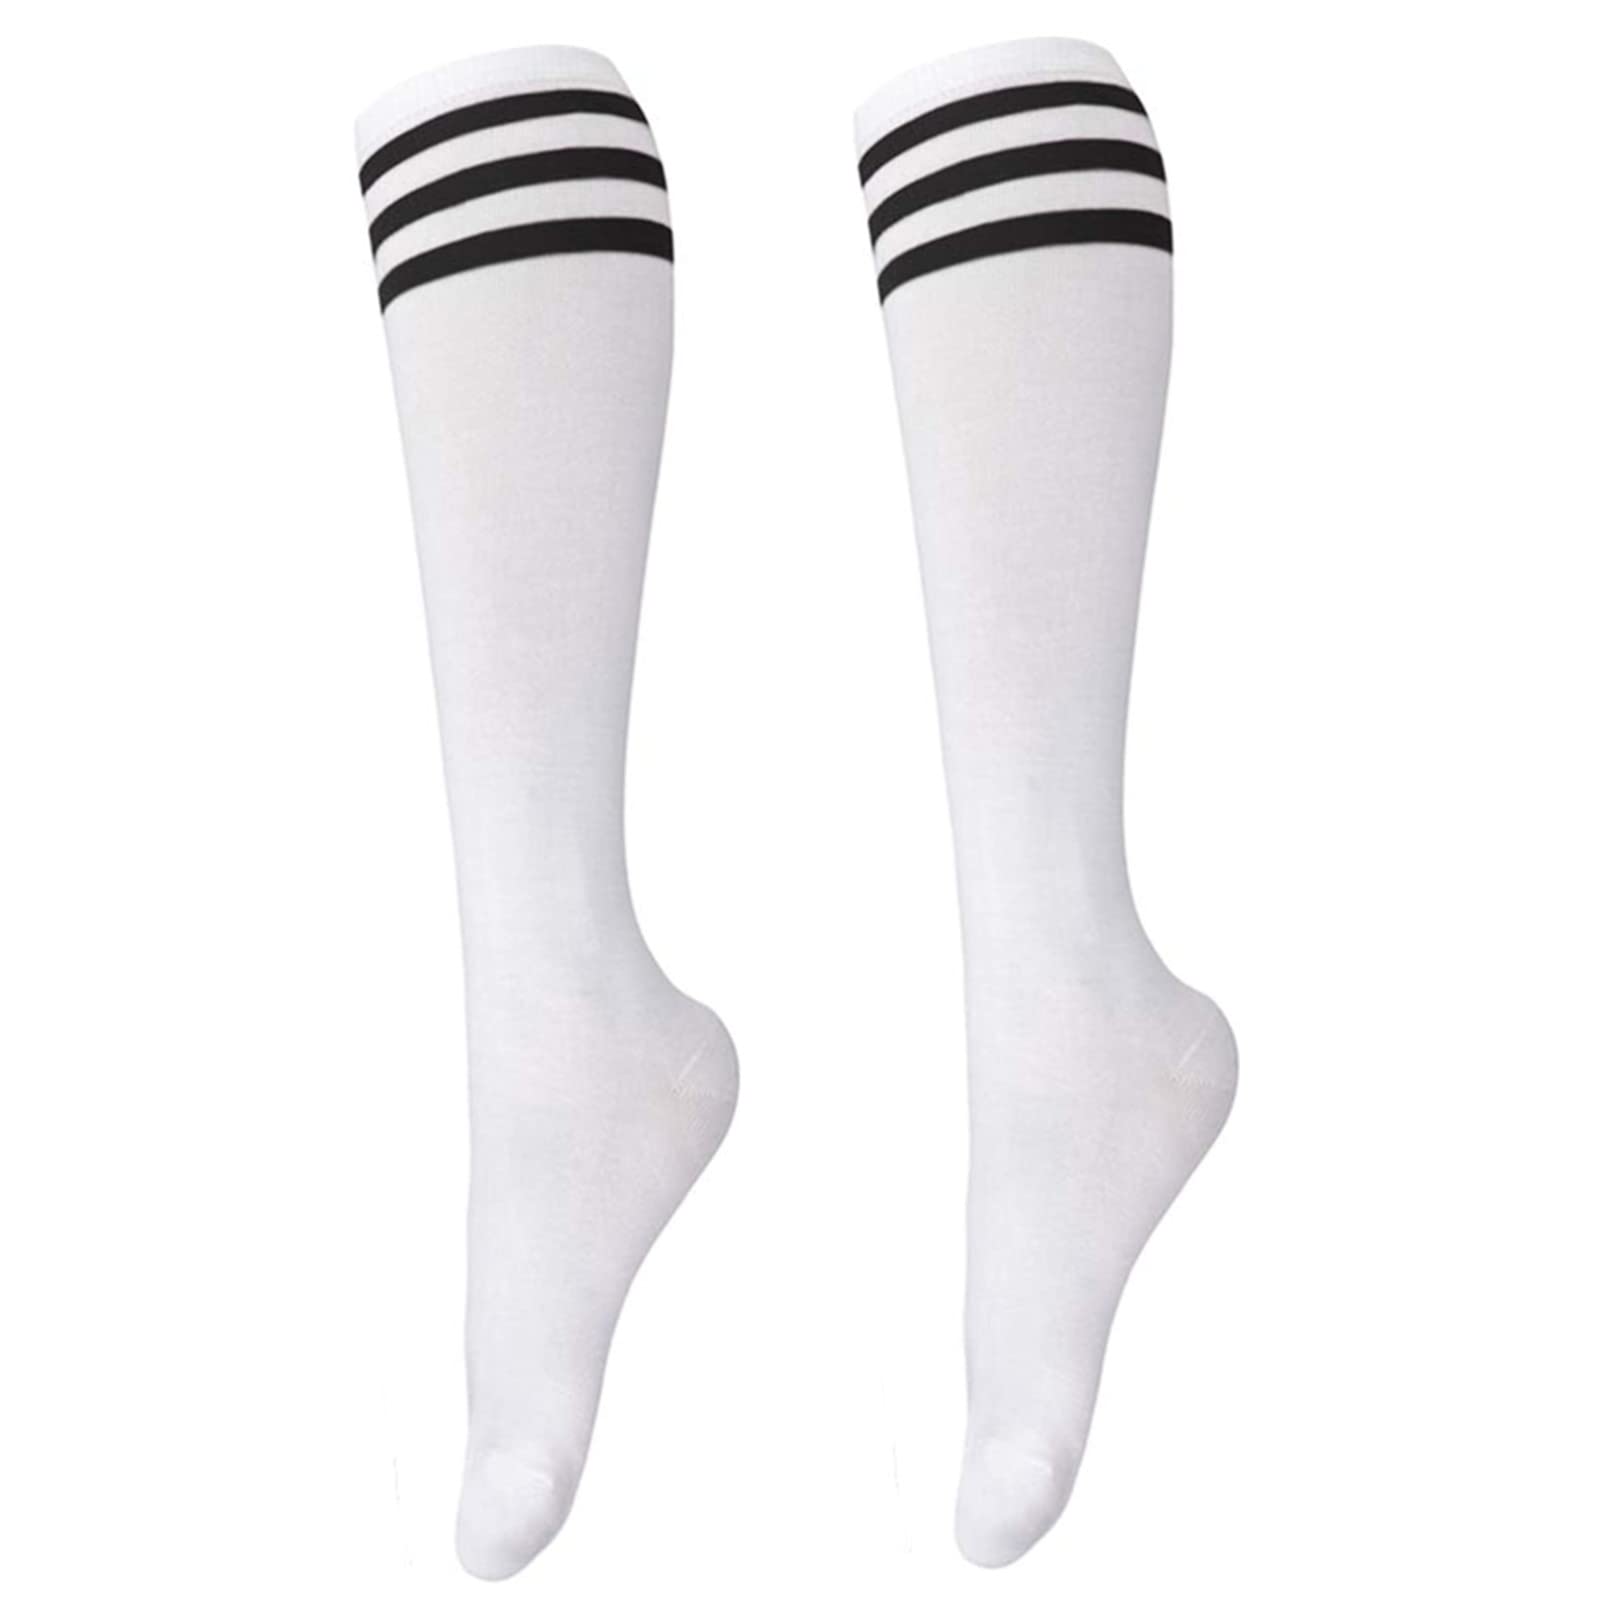 schoolgirl tube white socks with black stripes